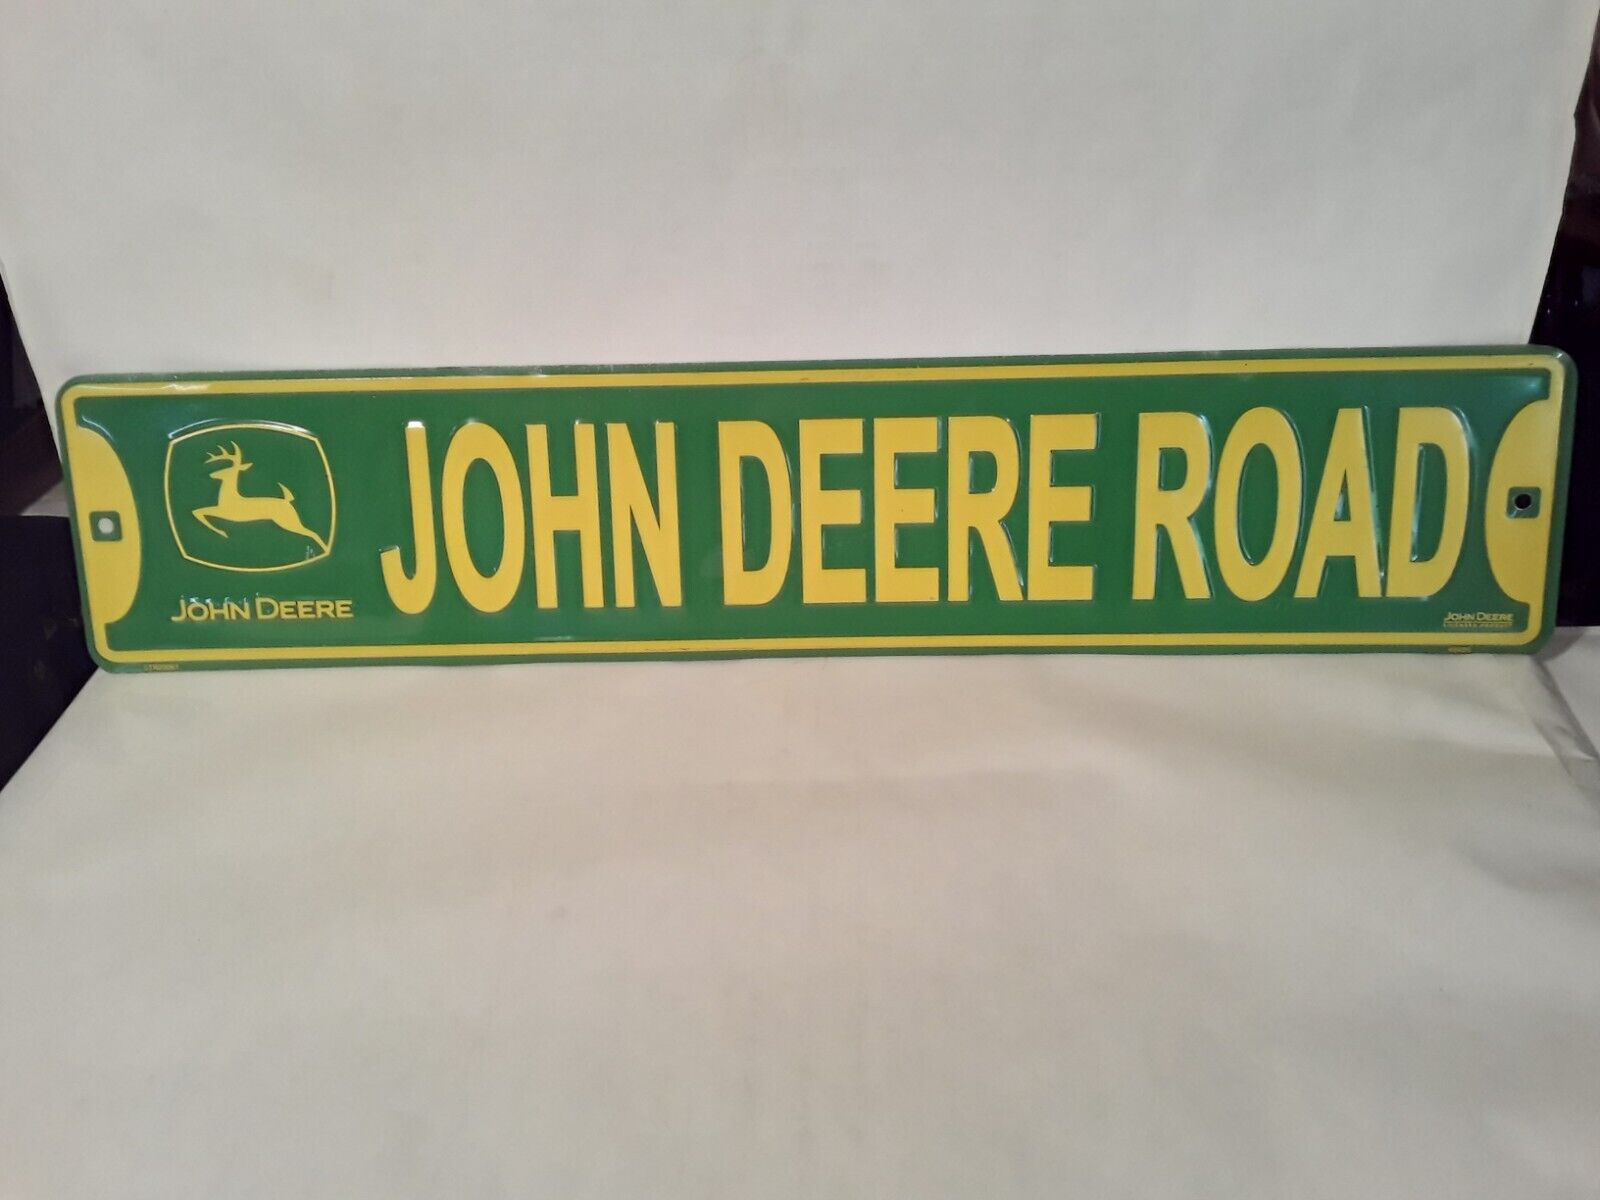 John Deere Metal Sign “John Deere Road” 24”x 5”